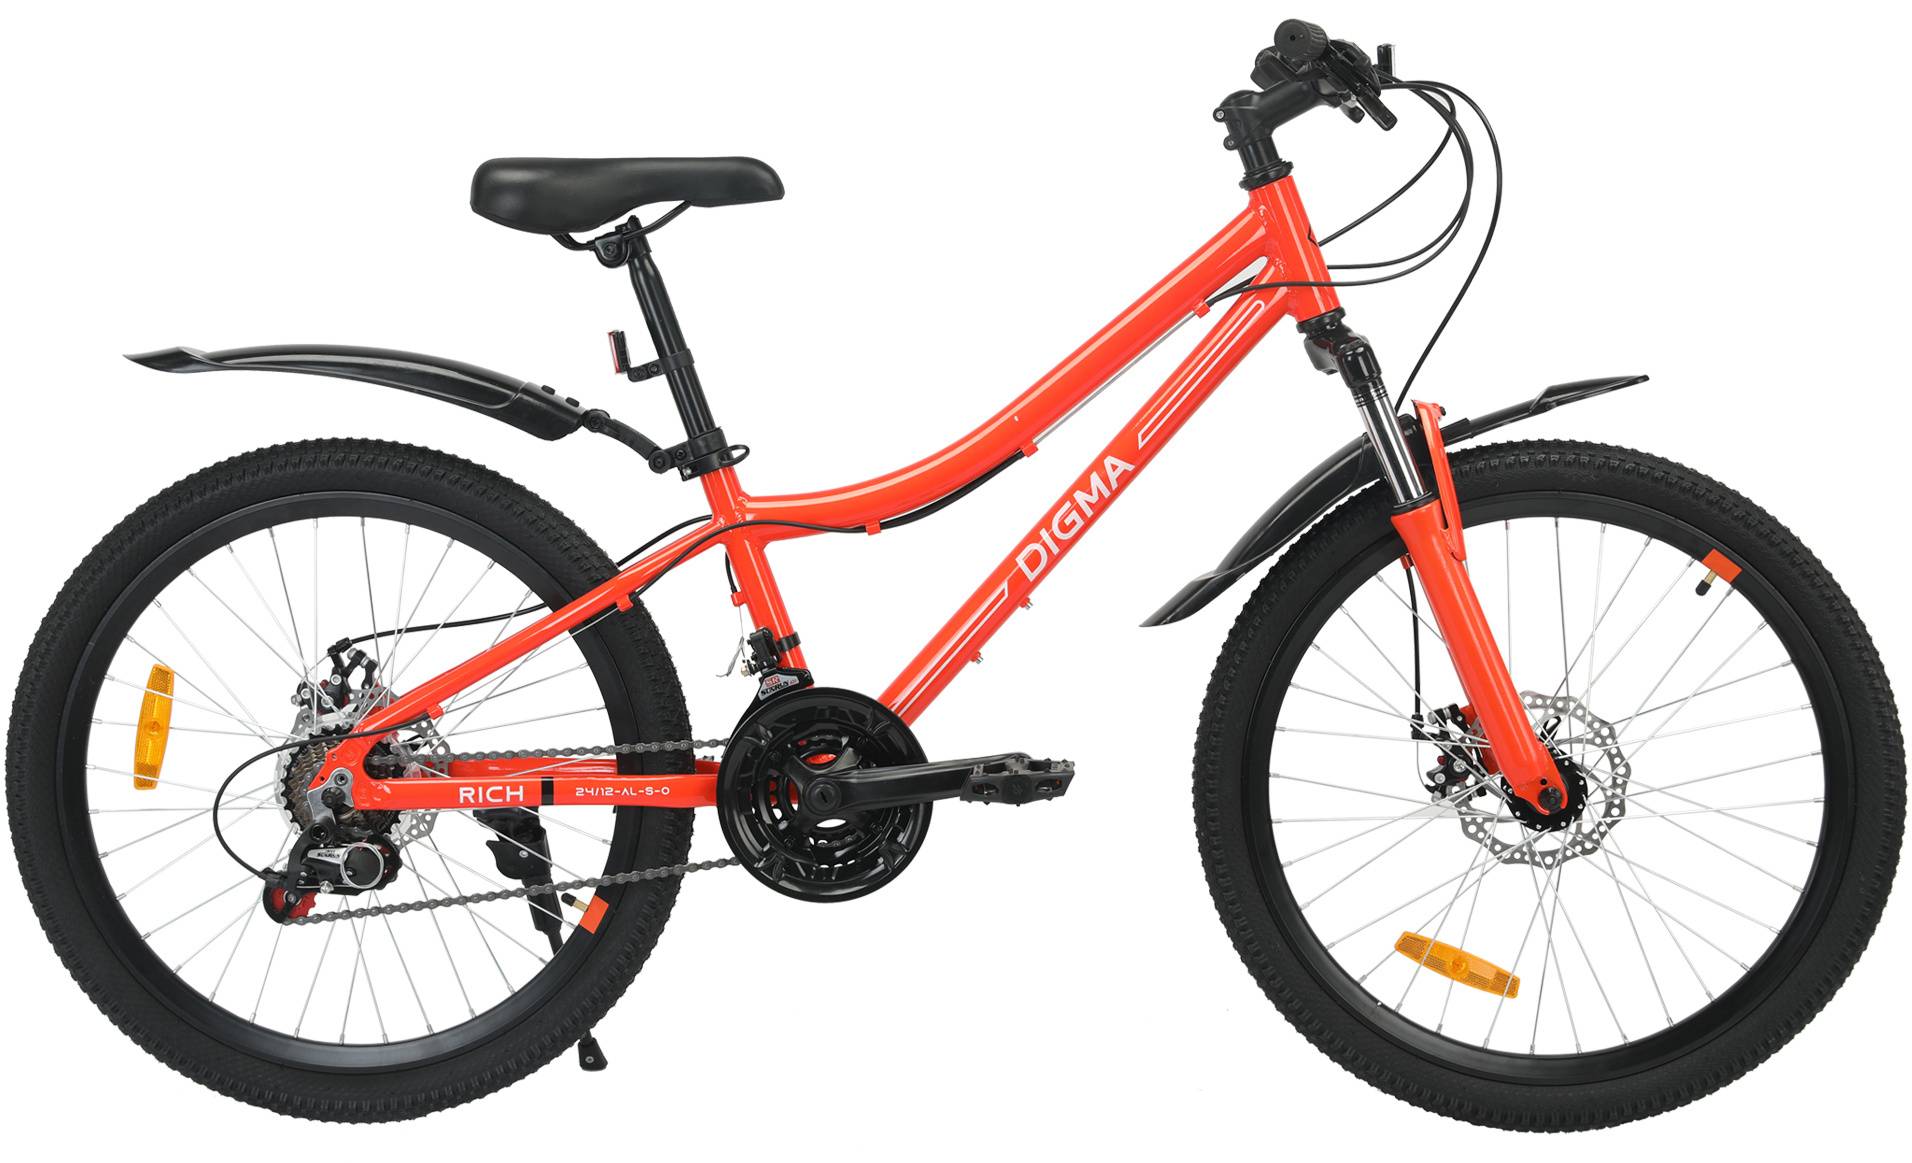 Велосипед горный Digma Rich оранжевый (rich-24/12-al-s-o)